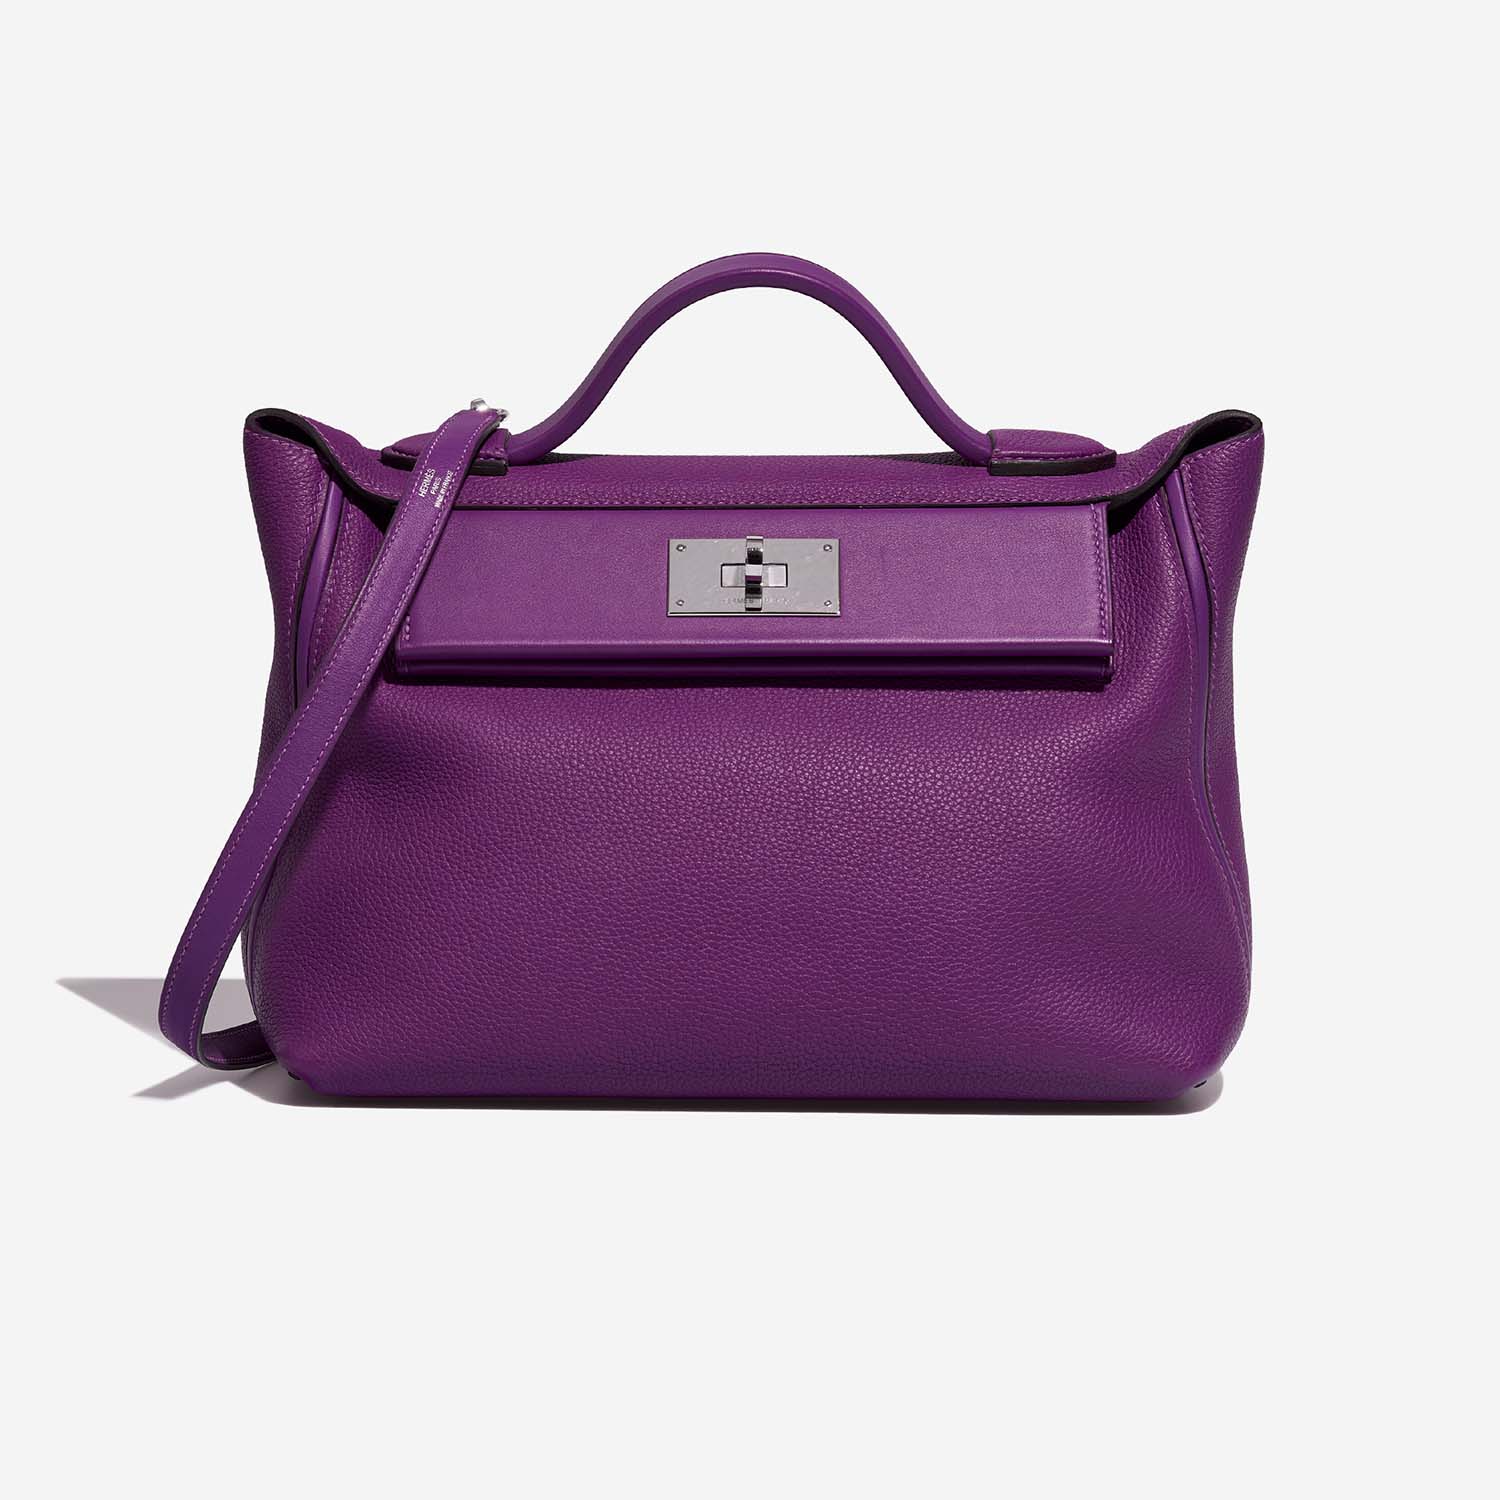 Sac Hermès d'occasion 24/24 29 Clémence Anémone Violet | Vendez votre sac de créateur sur Saclab.com